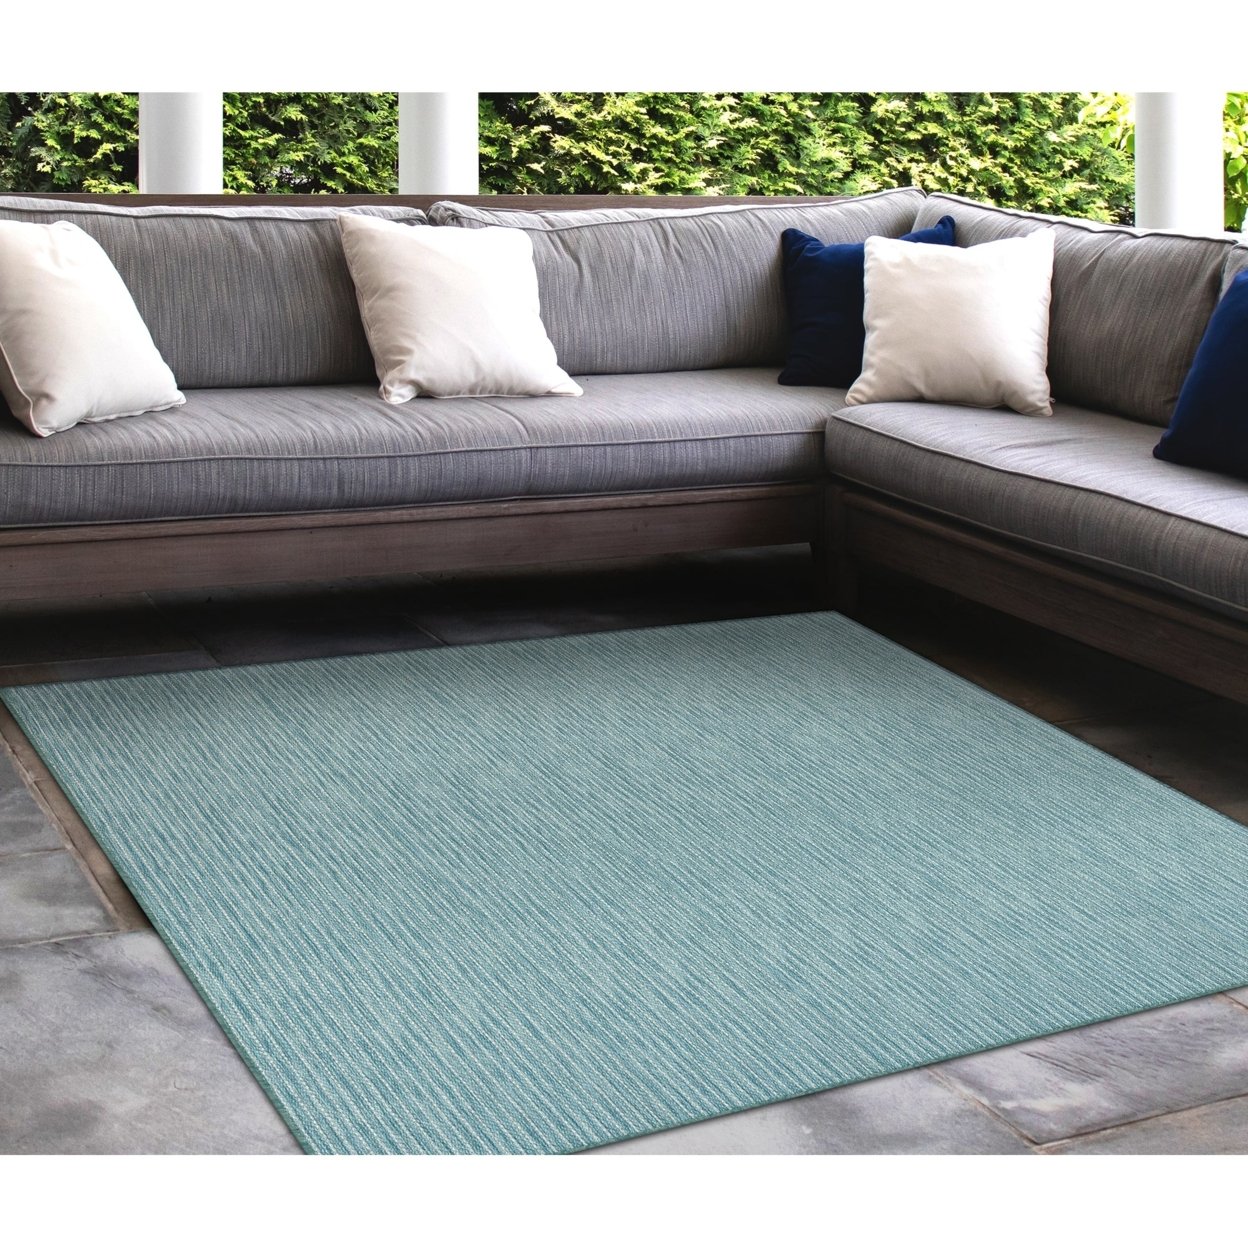 Liora Manne Carmel Texture Stripe Indoor Outdoor Area Rug Aqua - 6'6 X 9'4